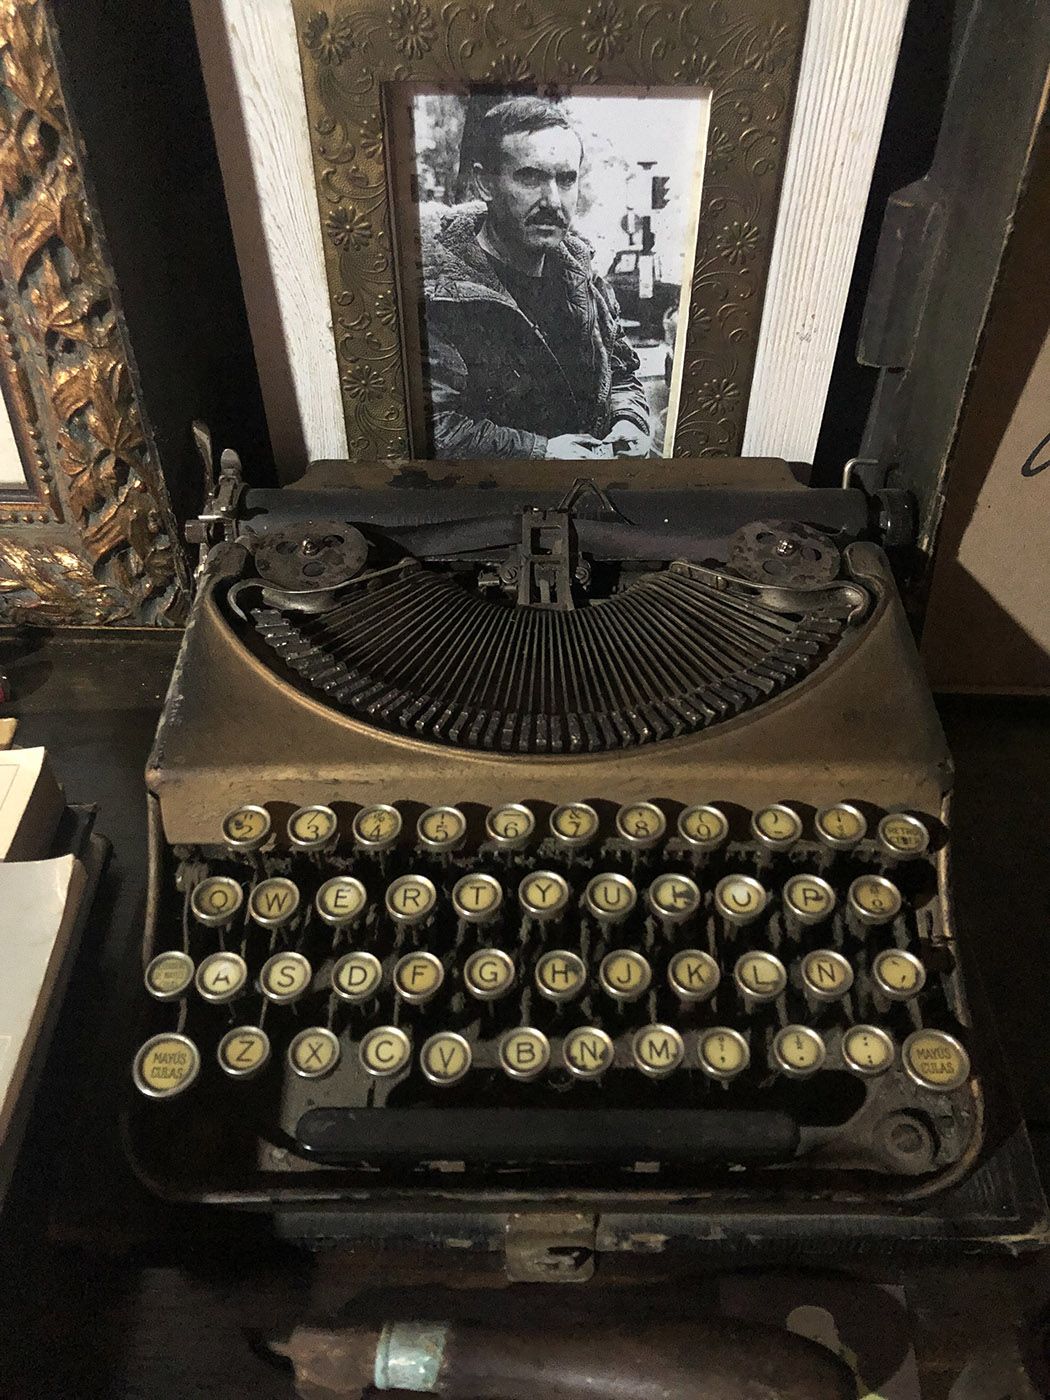 La máquina de escribir de Uxío Novoneyra.jpeg